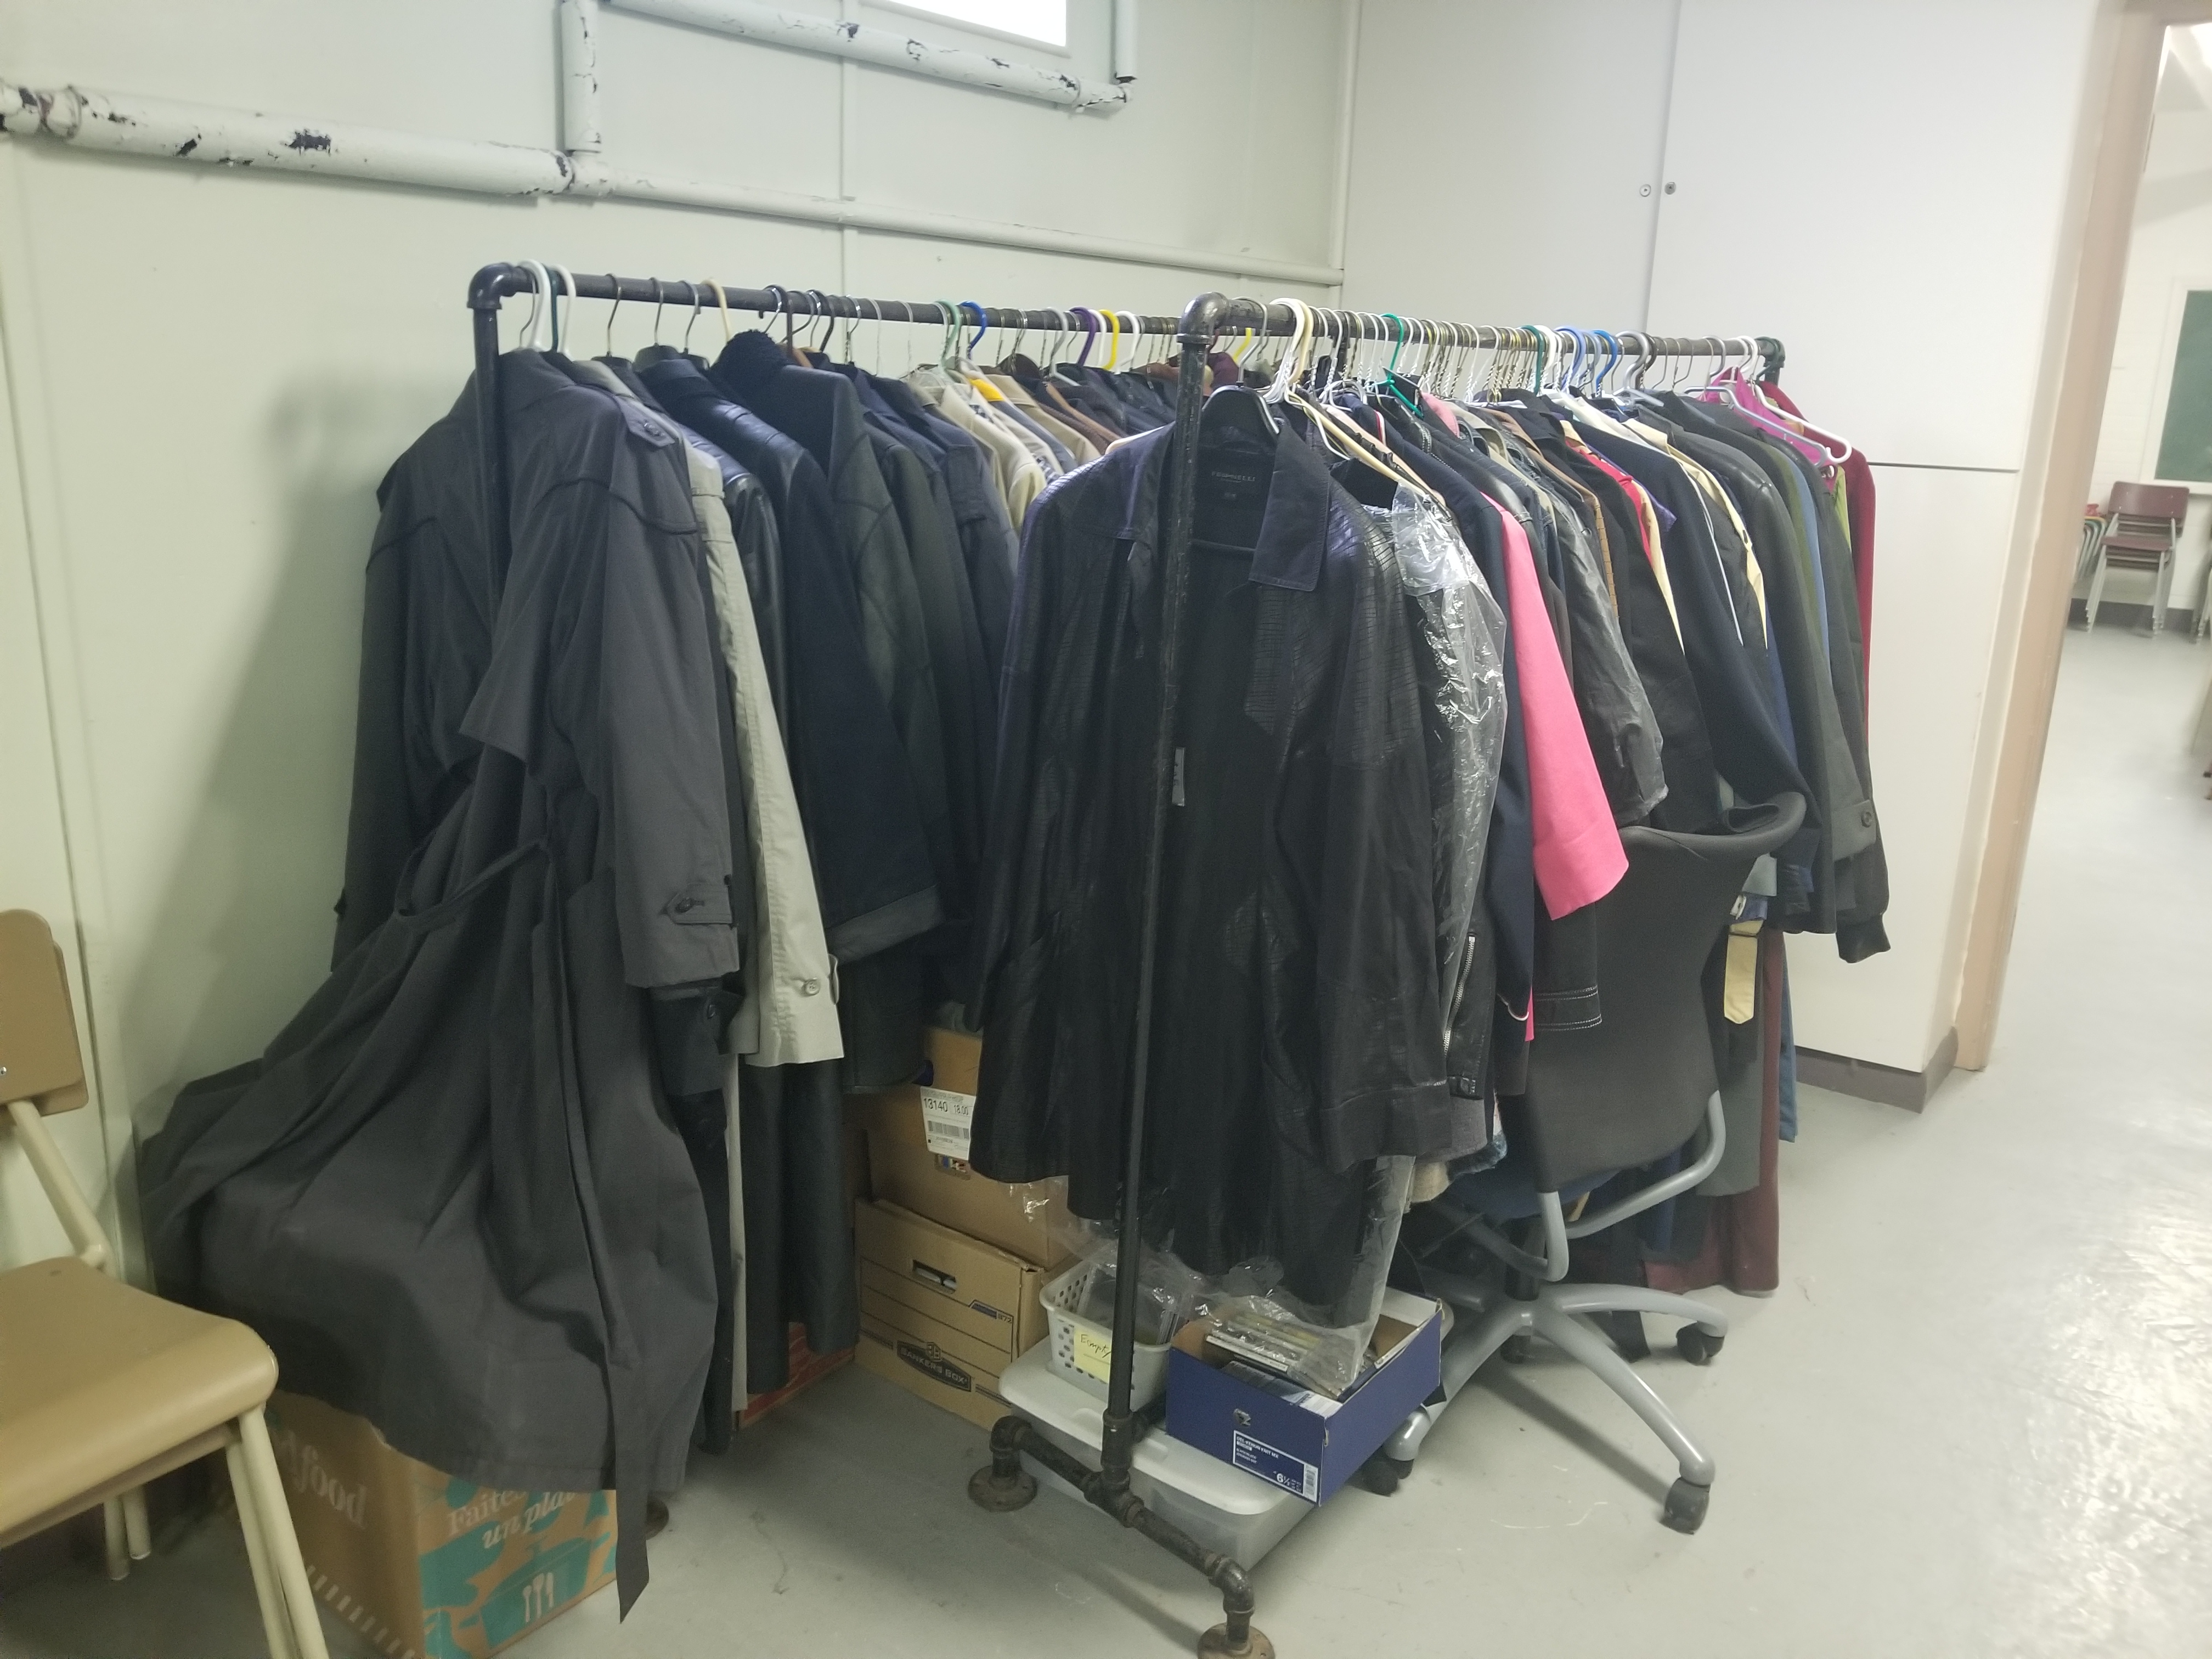 Clothing donations at church basement